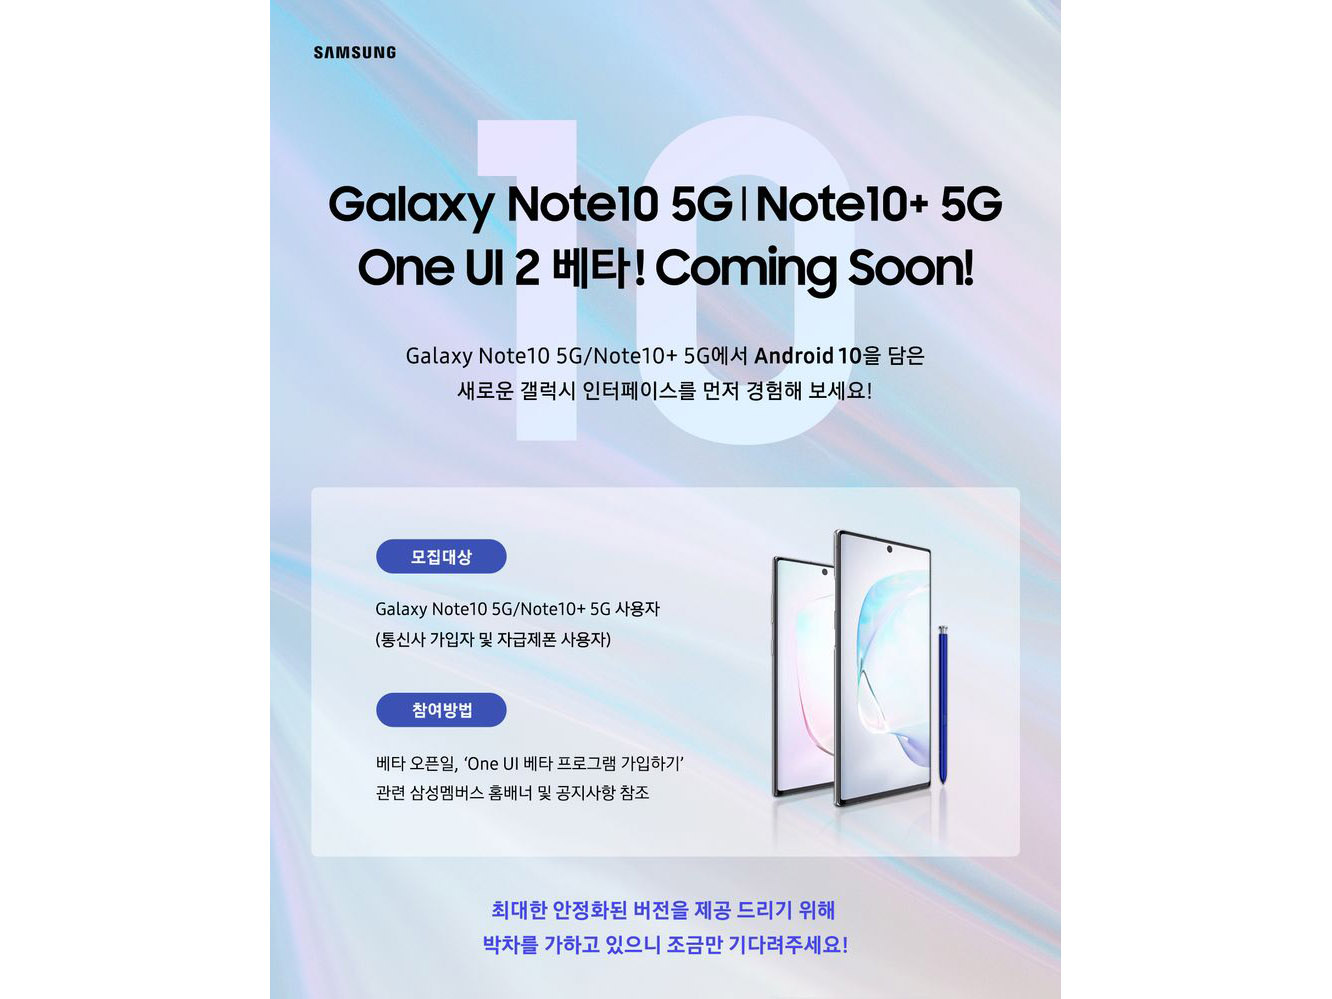 Samsung xác nhận sẽ
sớm có Android 10 beta cho Galaxy Note 10, Note 10+